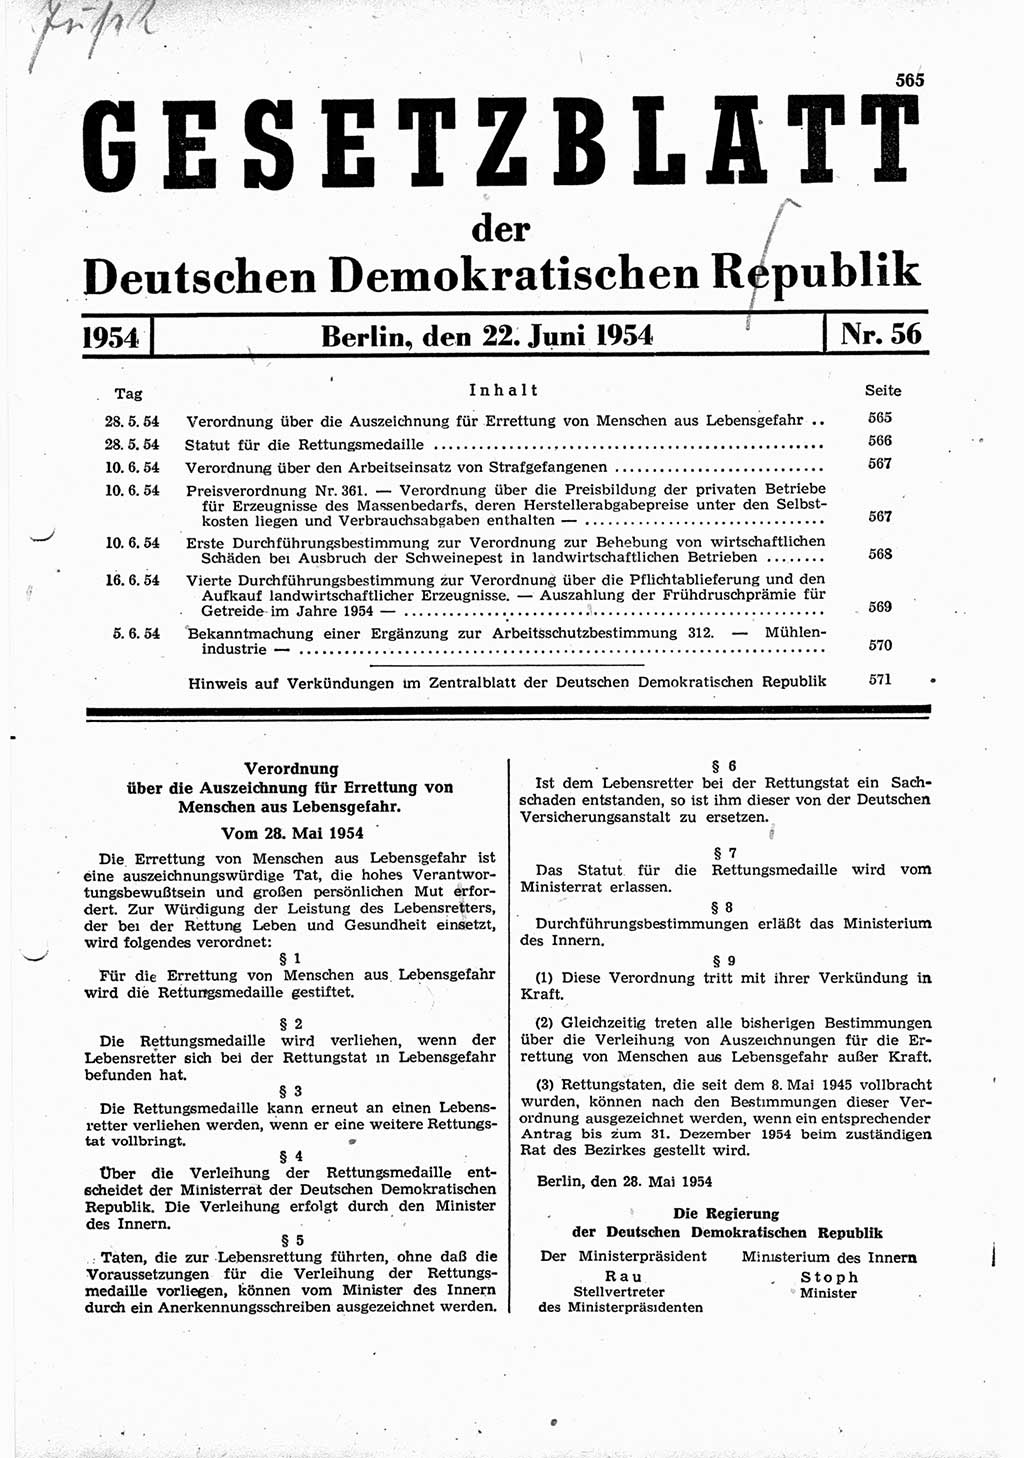 Gesetzblatt (GBl.) der Deutschen Demokratischen Republik (DDR) 1954, Seite 565 (GBl. DDR 1954, S. 565)